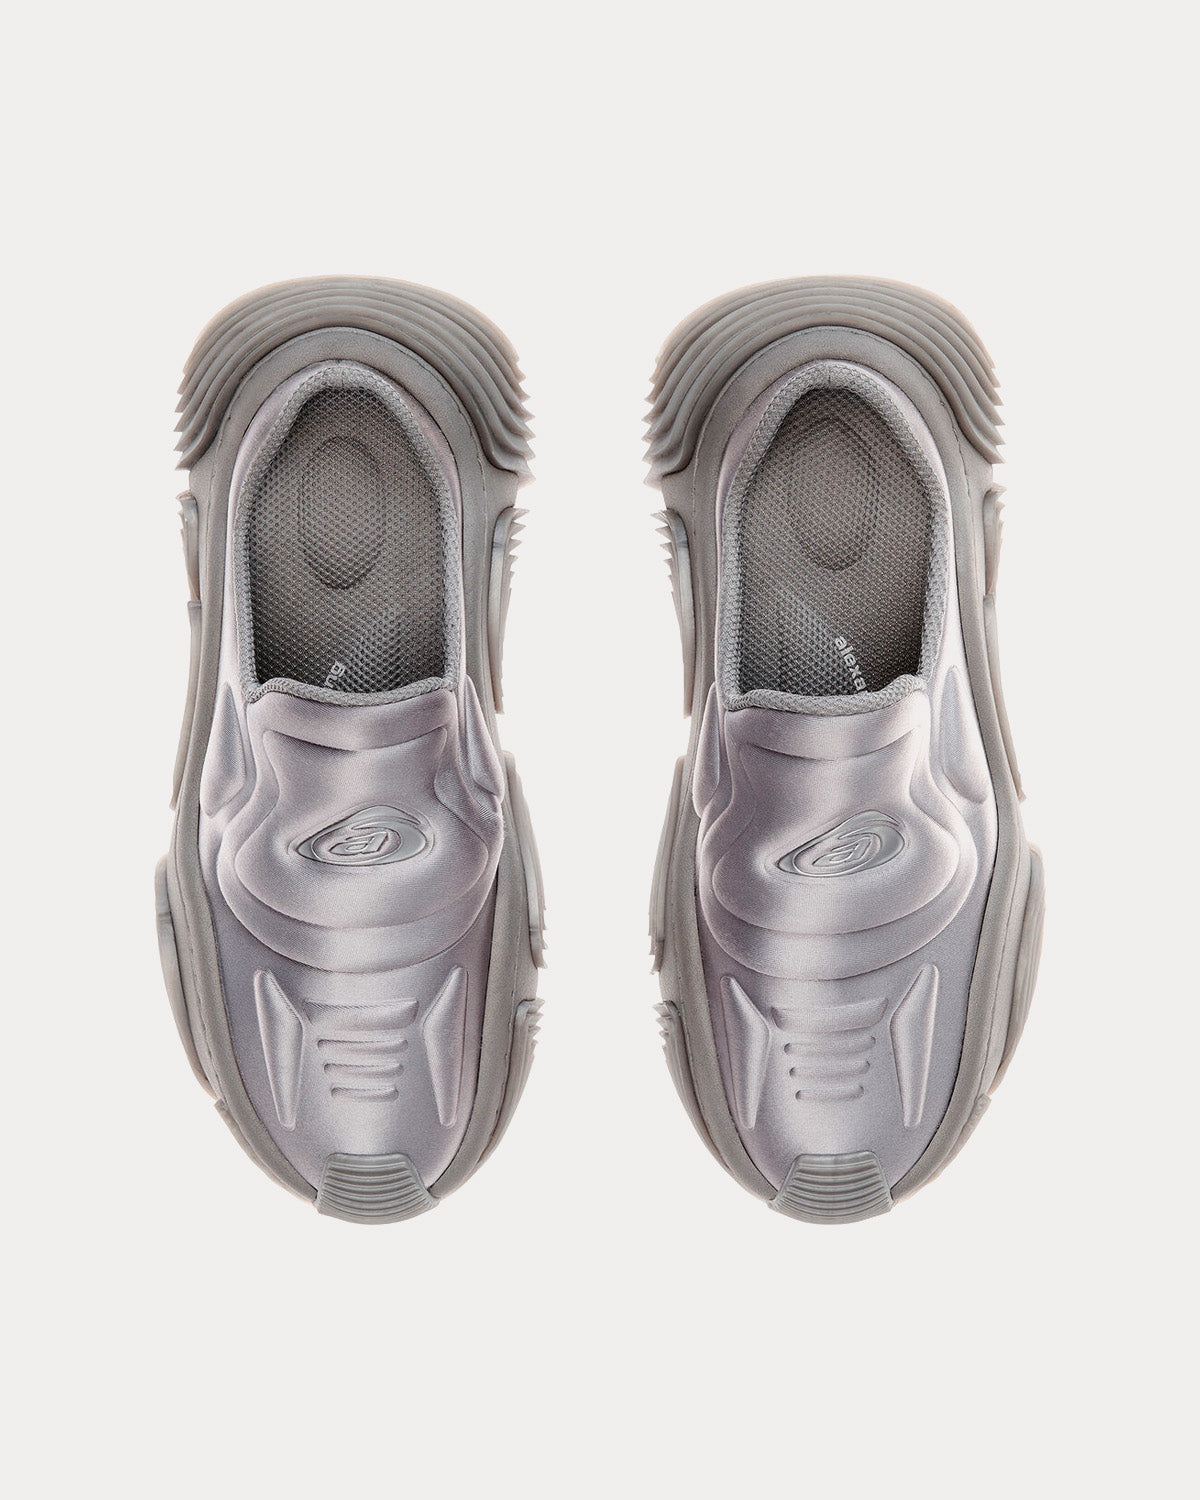 Alexander Wang - AW Vortex Mule in Lycra Grey Slip On Sneakers